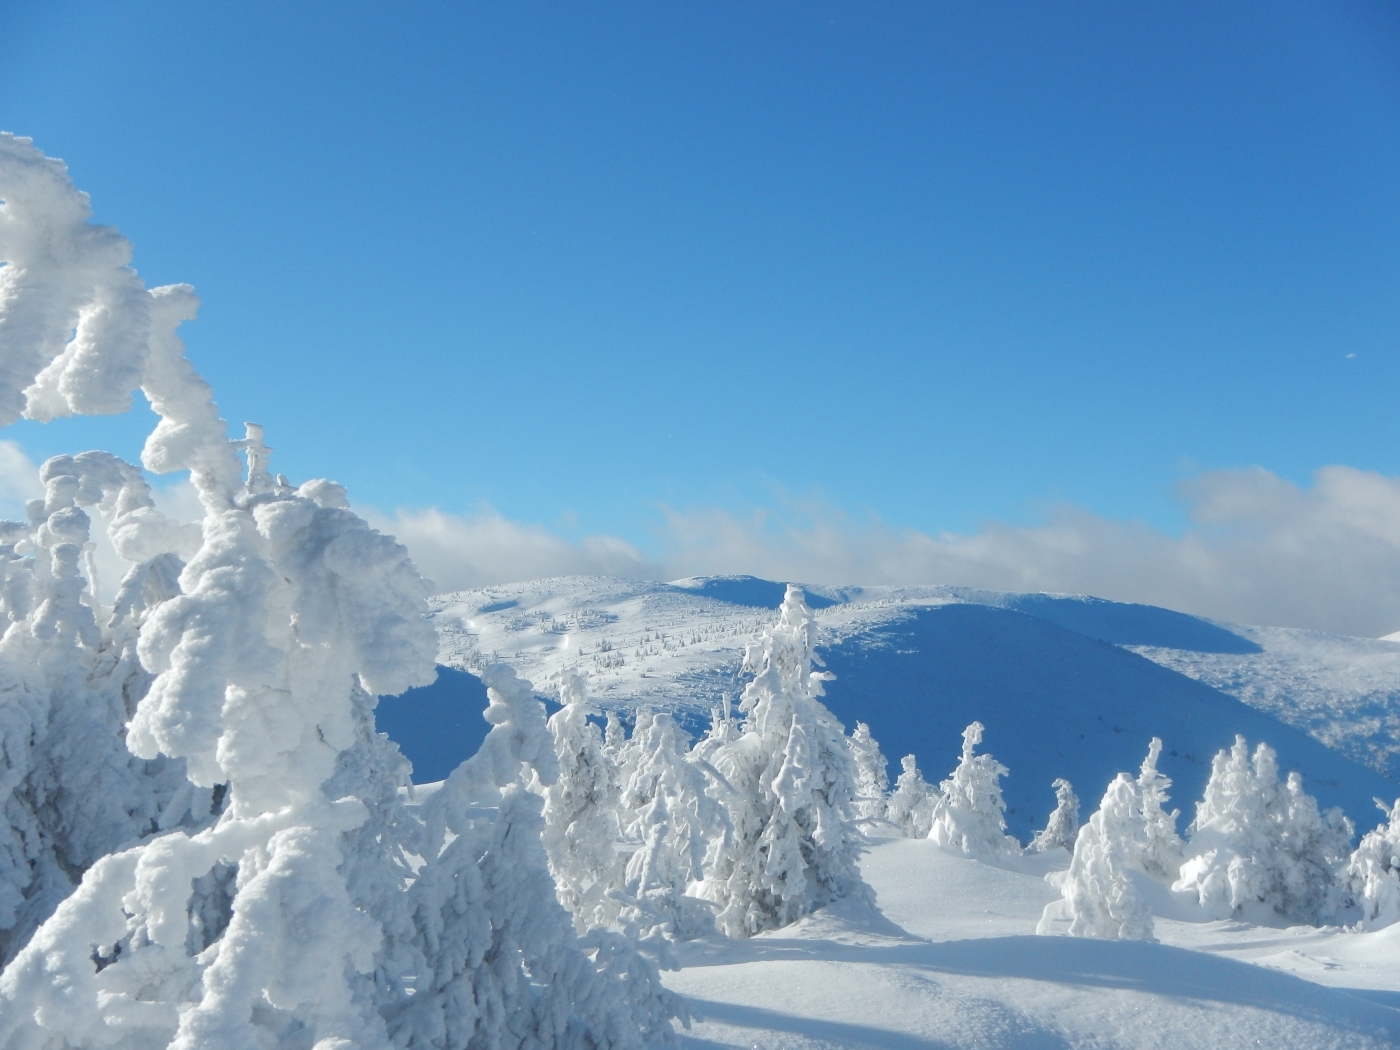 Скачать картинку Снег, Деревья, Пейзаж, Зима в телефон бесплатно.